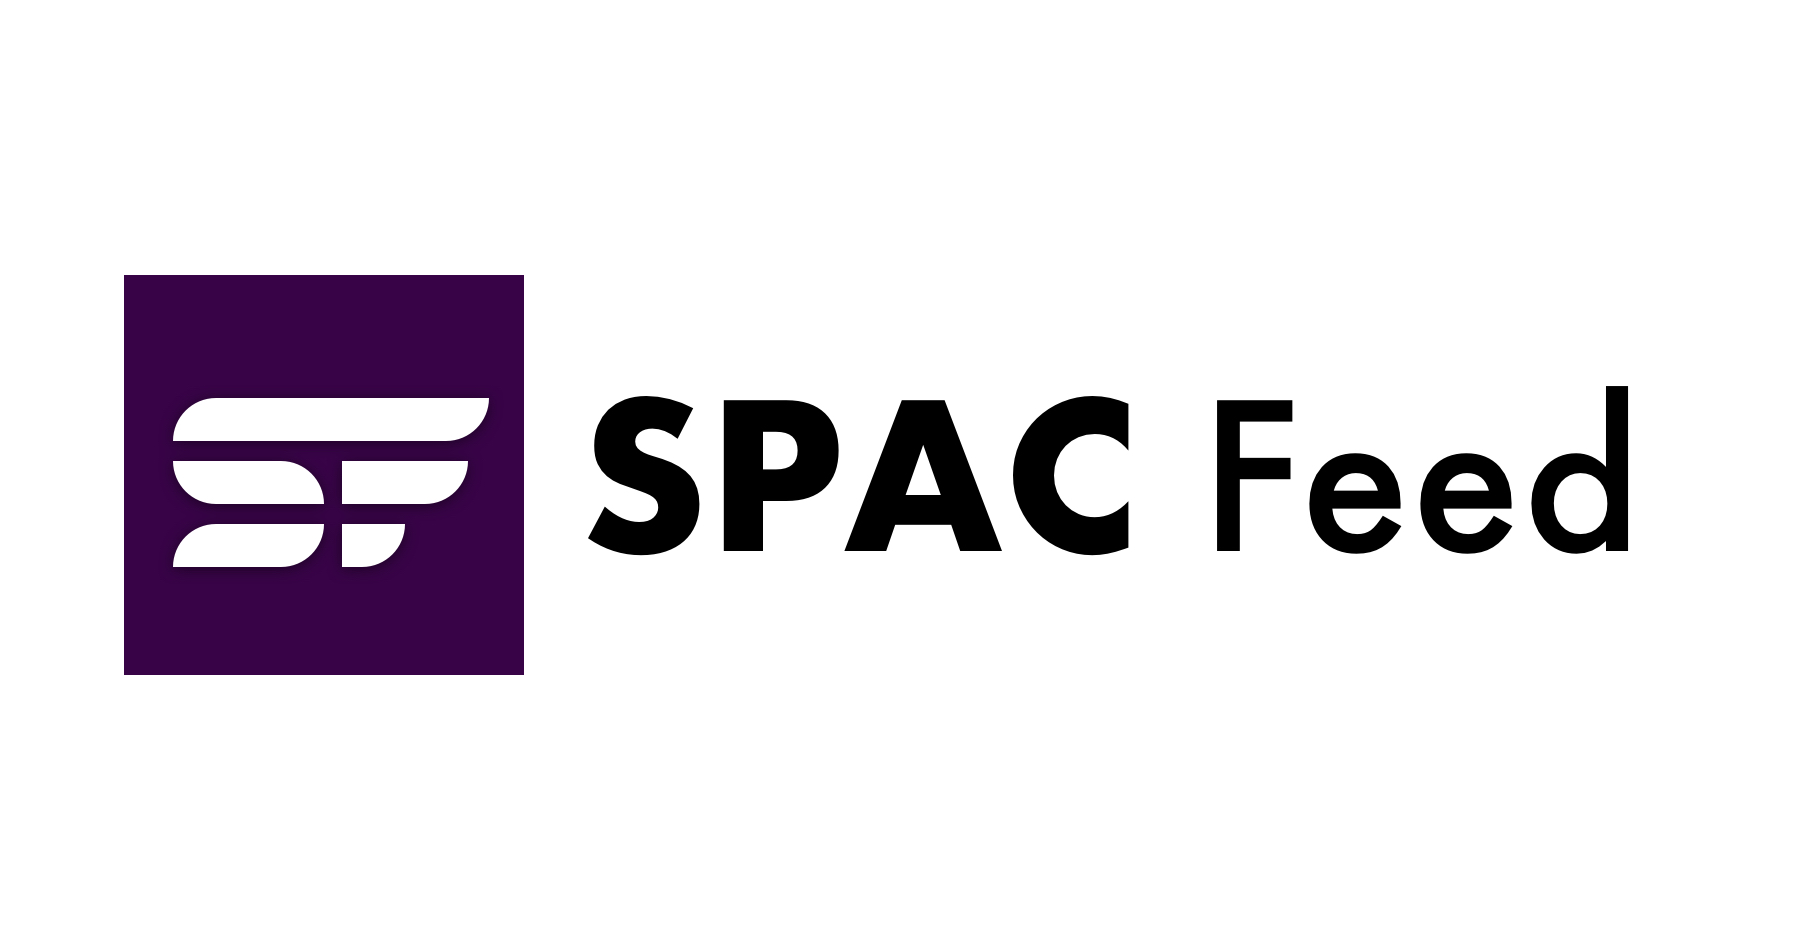 Oferty SPAC kurczą się po wygaśnięciu spekulacji